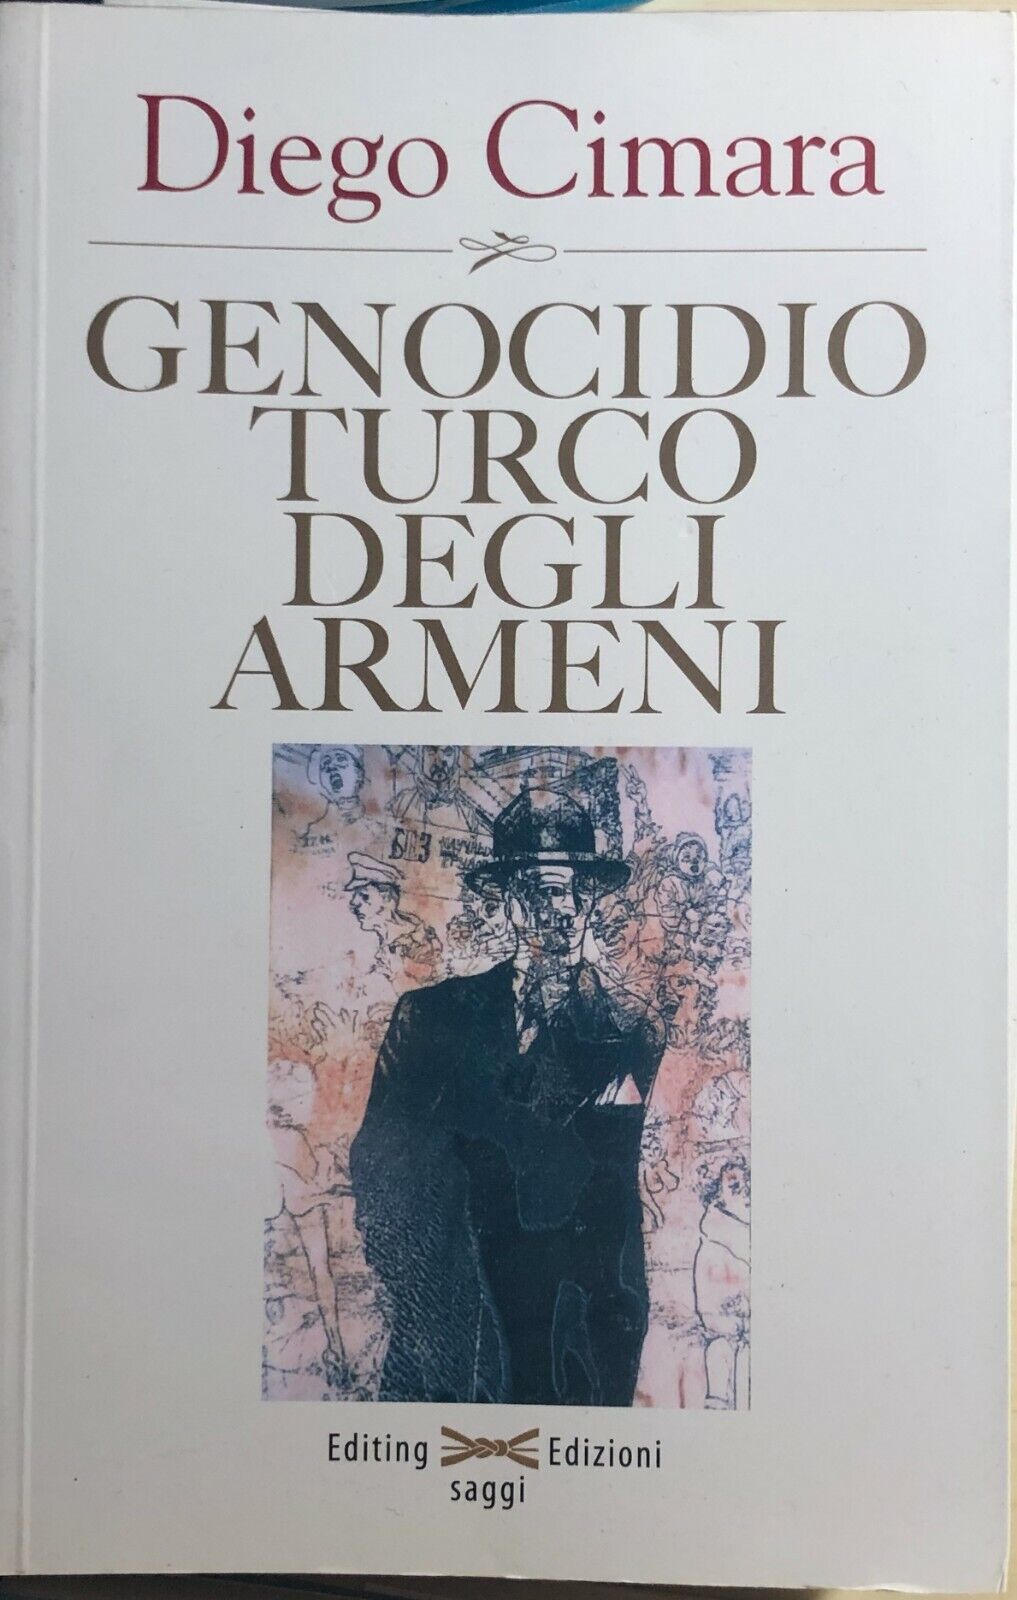 Genocidio turco degli armeni di Diego Cimara, 2006, Editing Edizioni